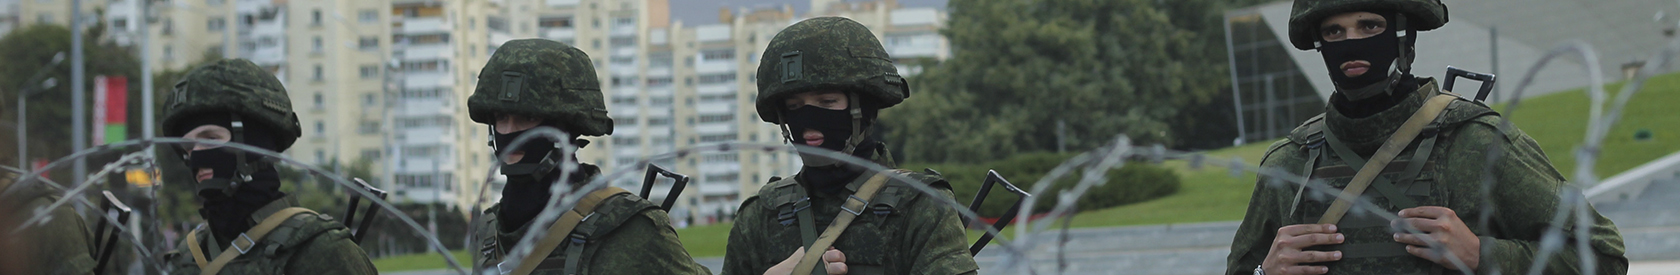 Die Situation der Dienstverweigerung in der belarusischen Armee 2022/2023 und die Militarisierung der Kinder in Belarus [aktualisiert]